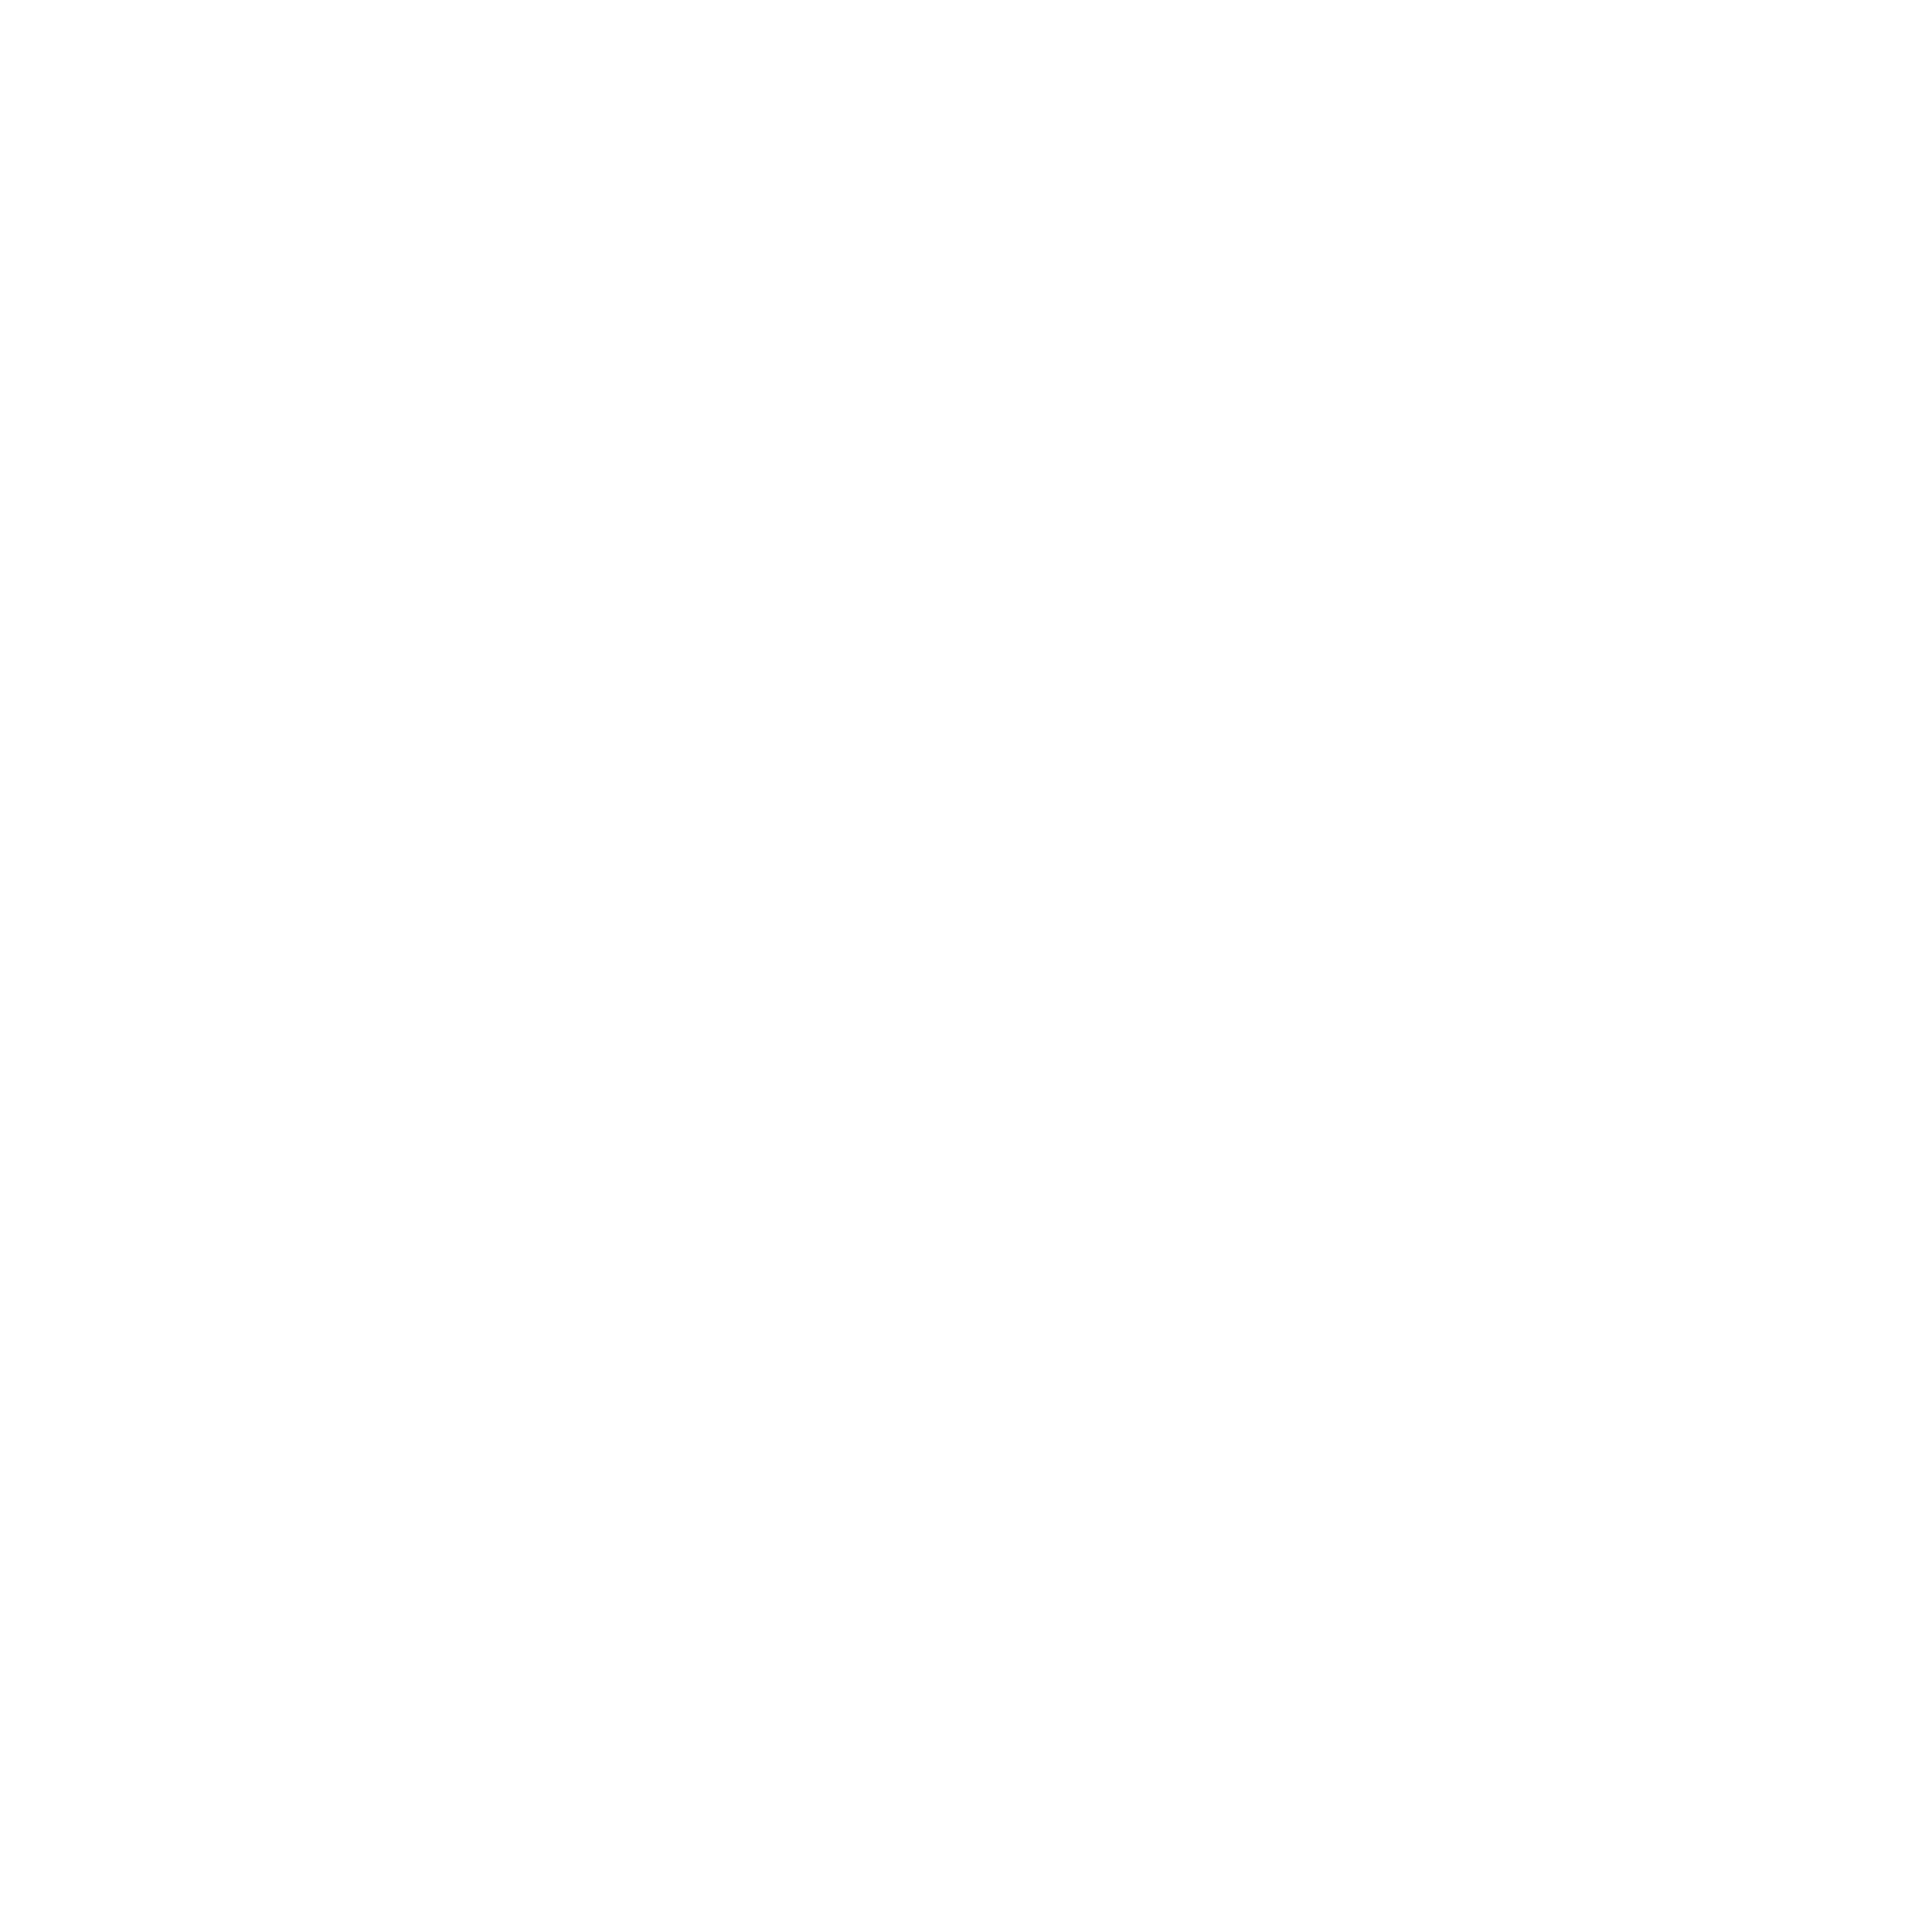 PRMIA Logo - PRMIA Logo PNG Transparent & SVG Vector